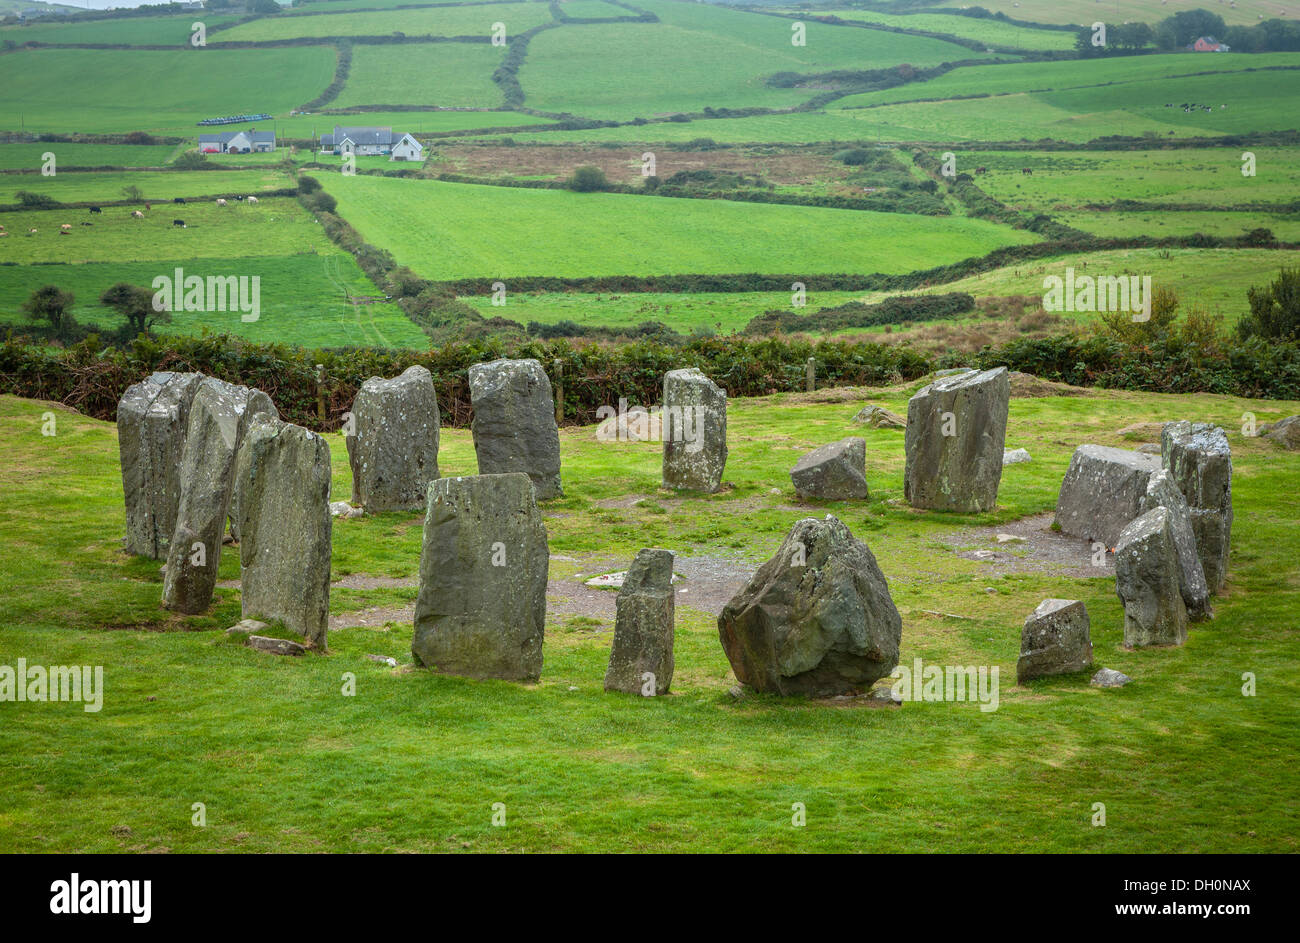 El condado de Cork, Irlanda: Piedras de Drombeg círculo de piedra que data de cerca de Glandore 1100-800 A.C. Foto de stock